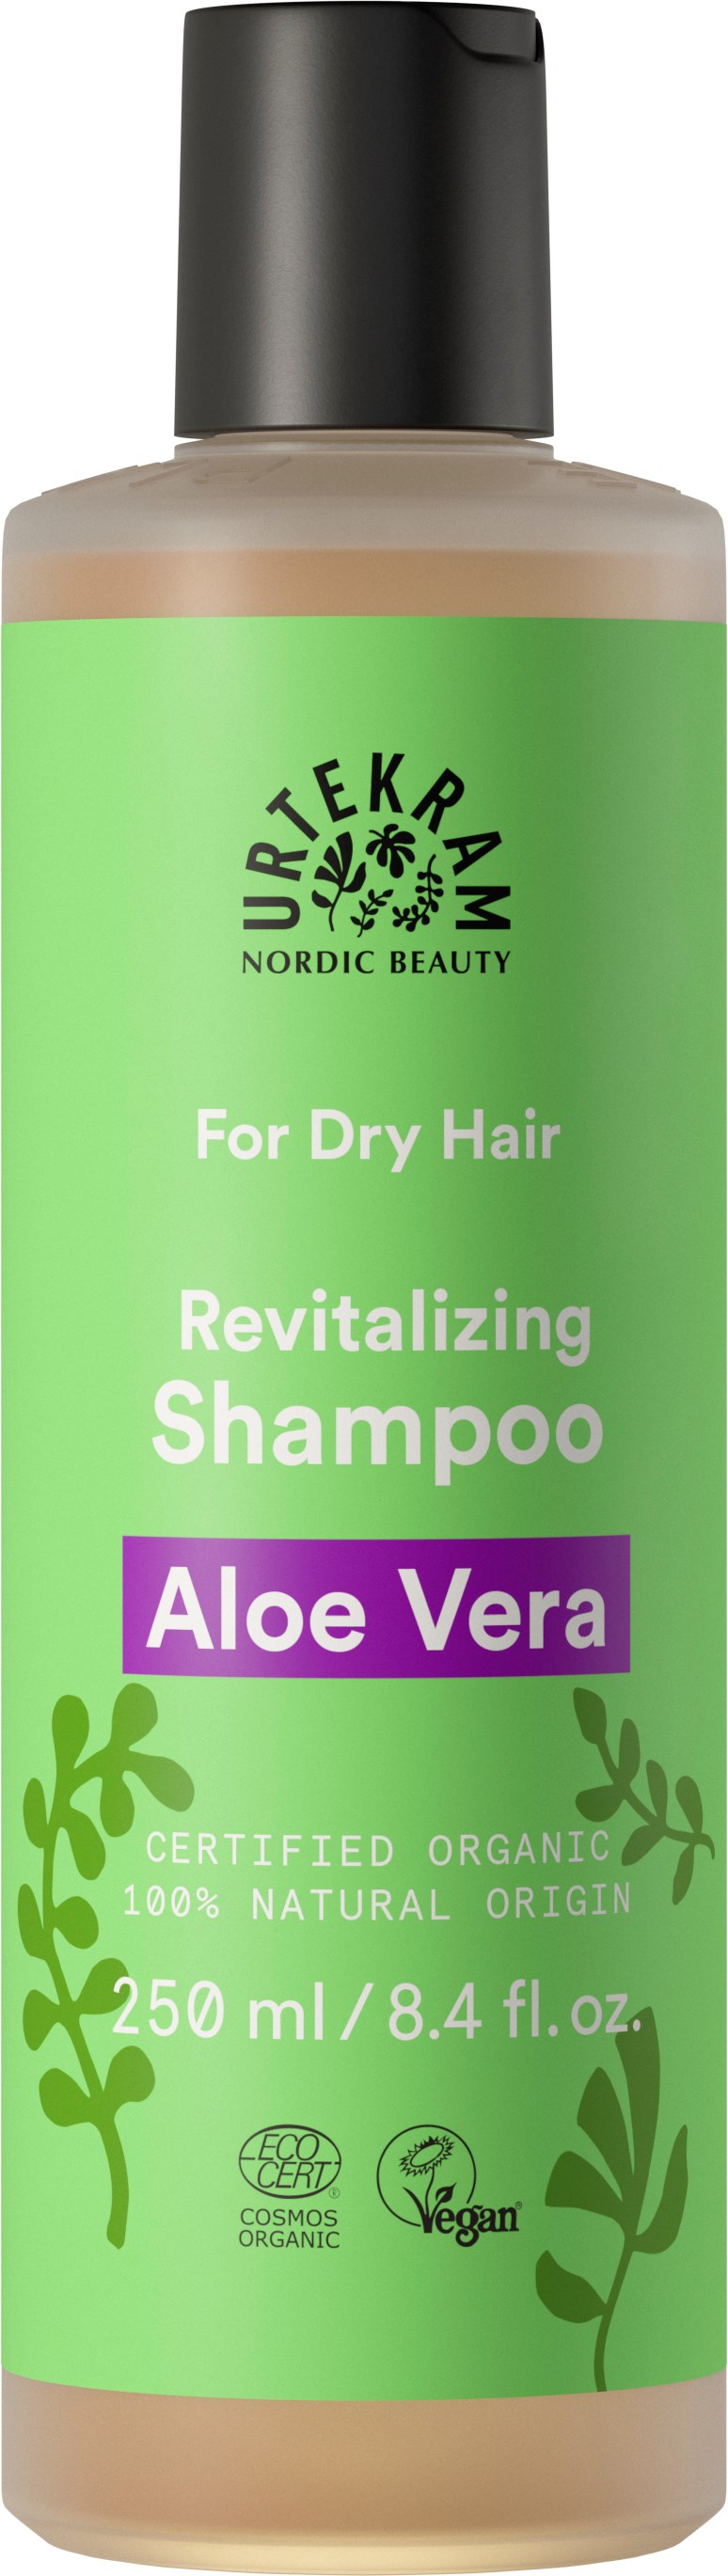 Aloe Vera Shampoo Dry Hair